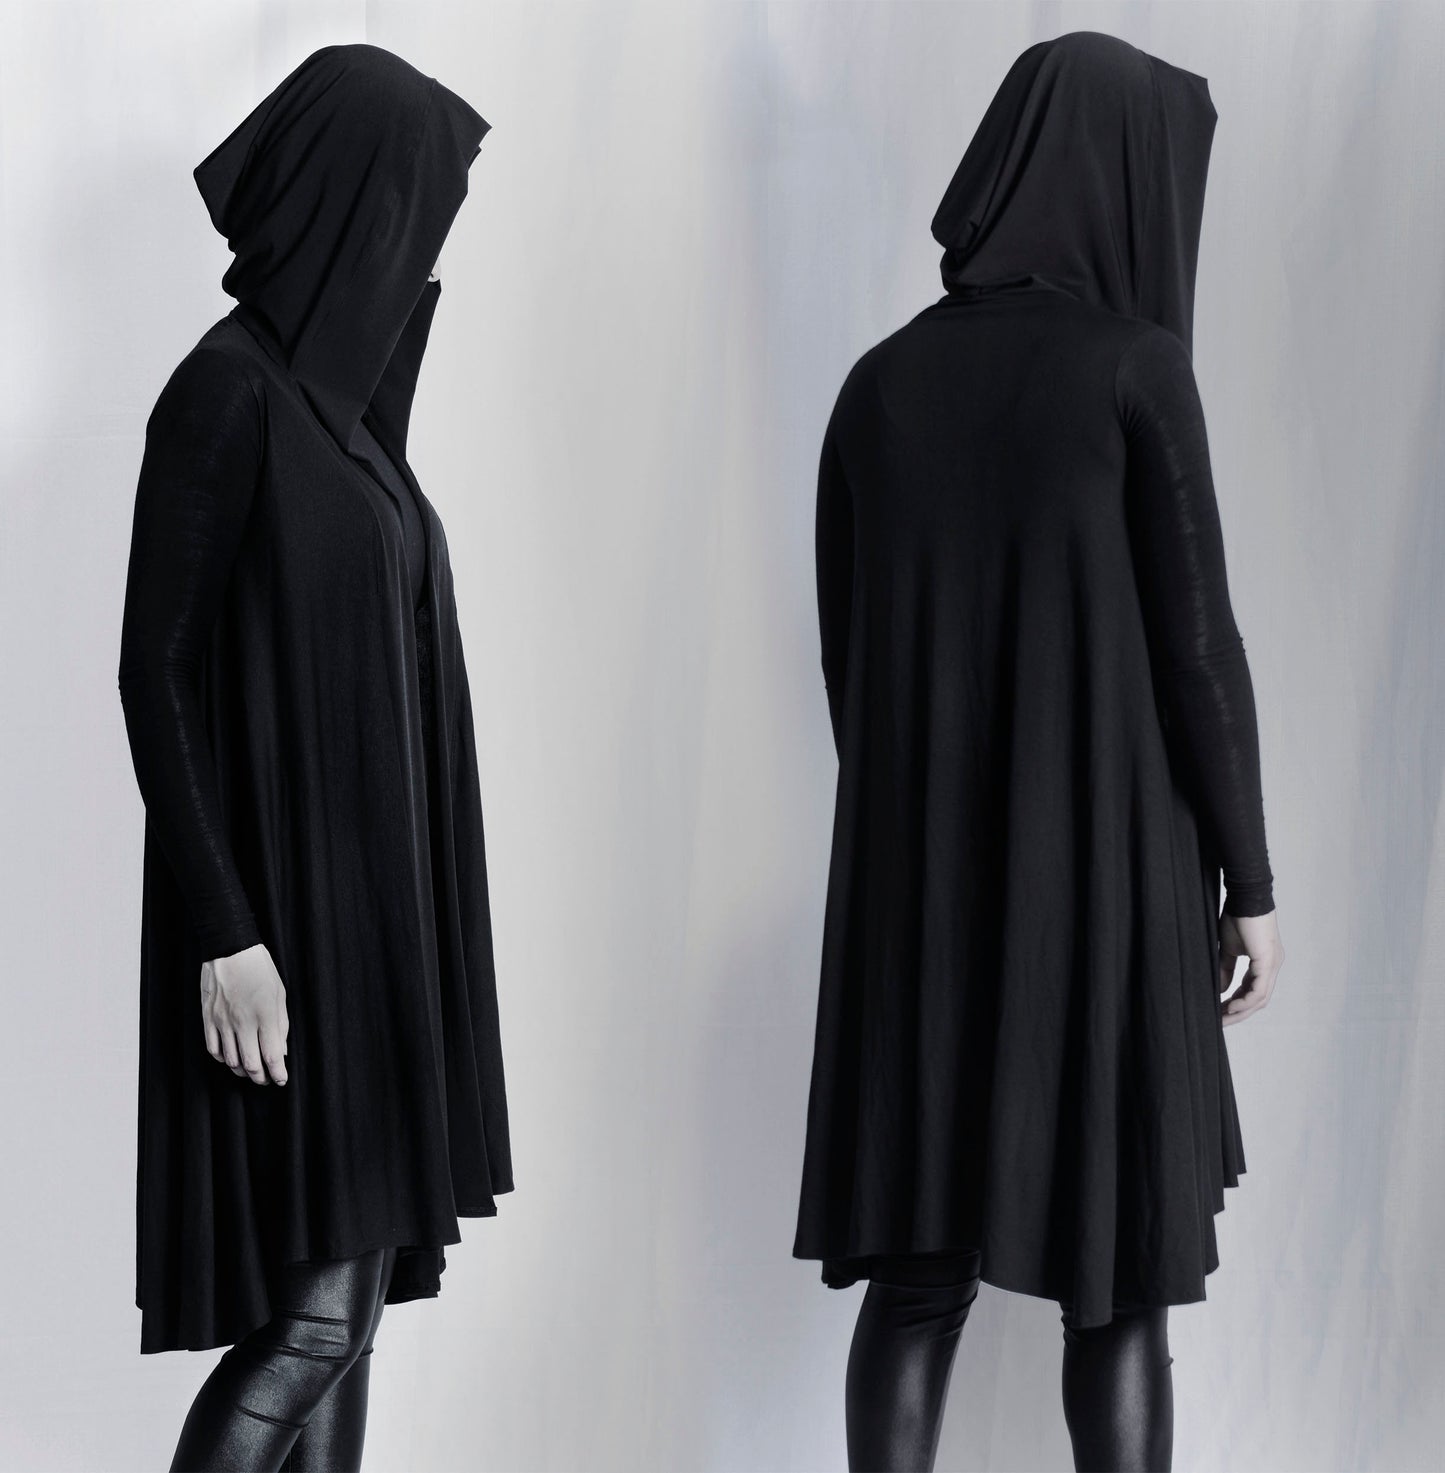 Handmade Dark Hoodie - Witch Hood - Longsleeve coat - Hooded robe